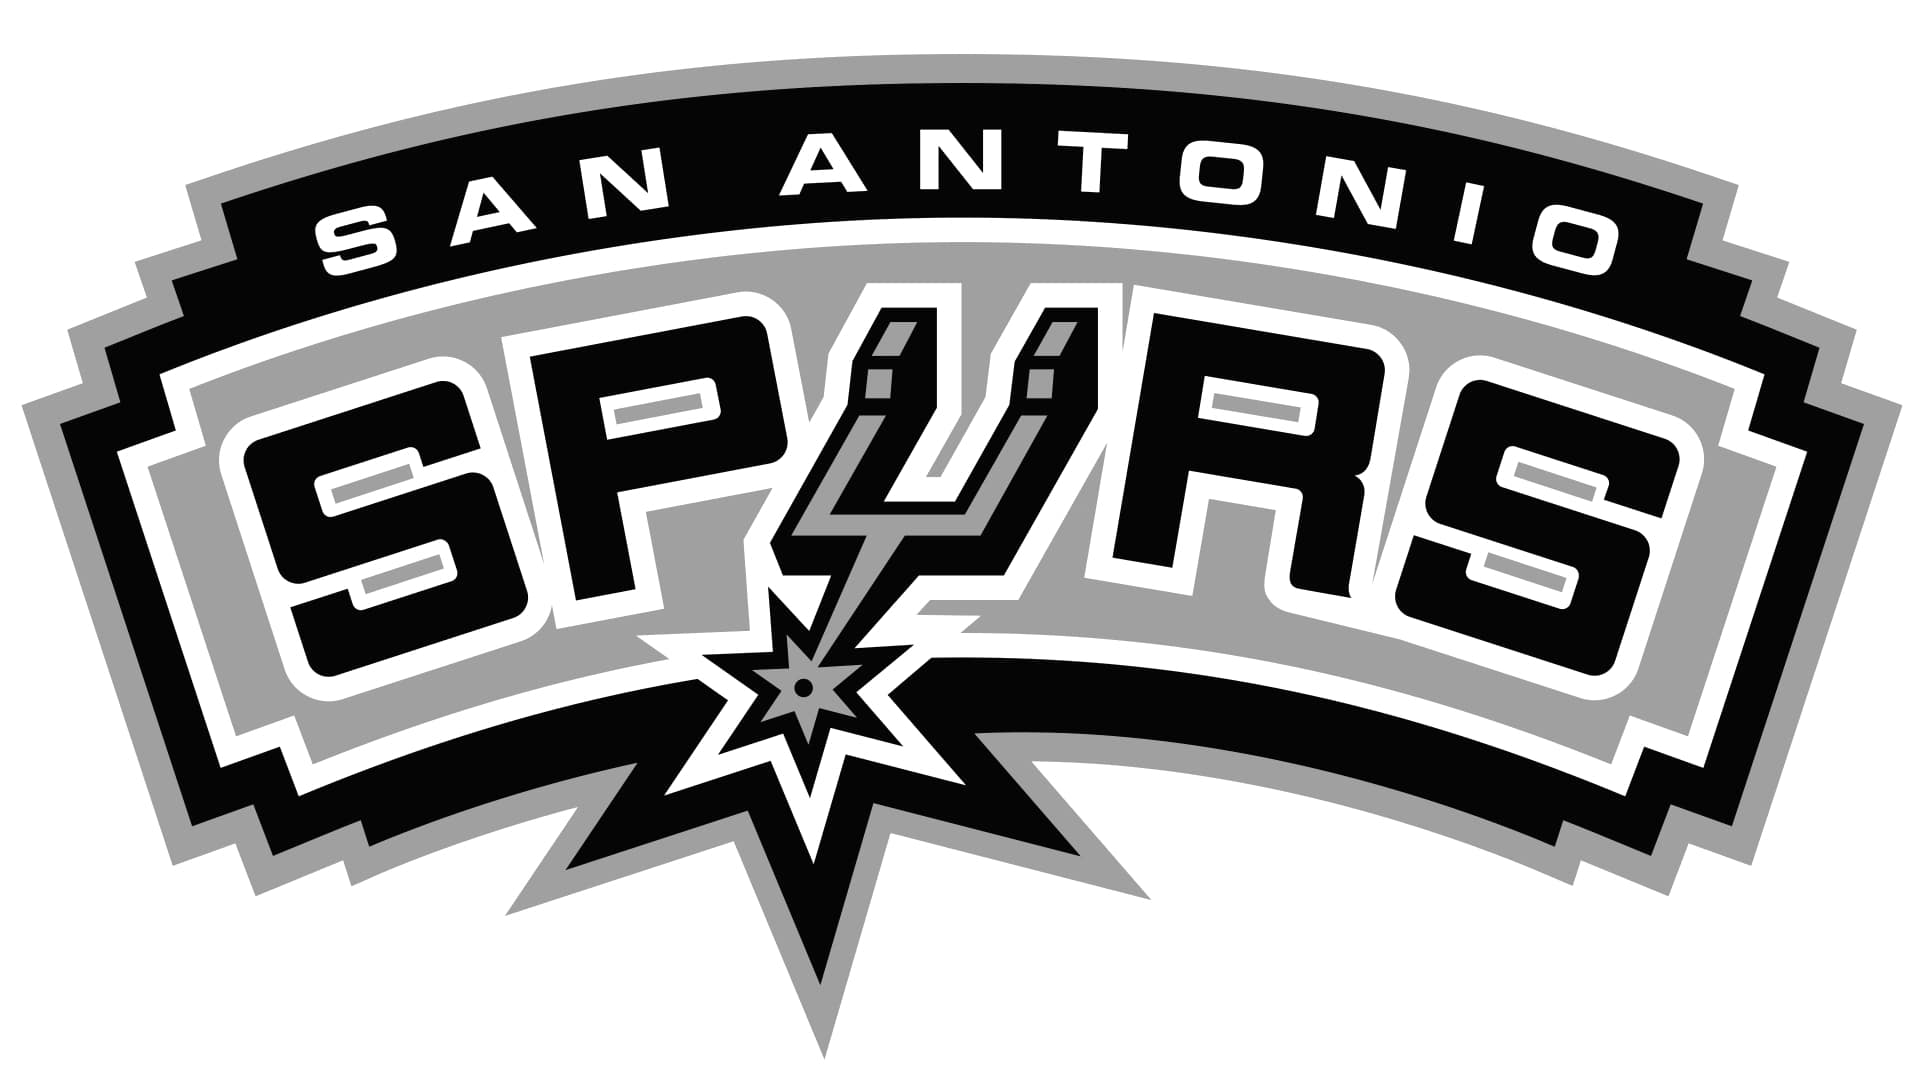 O que significa o símbolo de San Antonio Spurs?